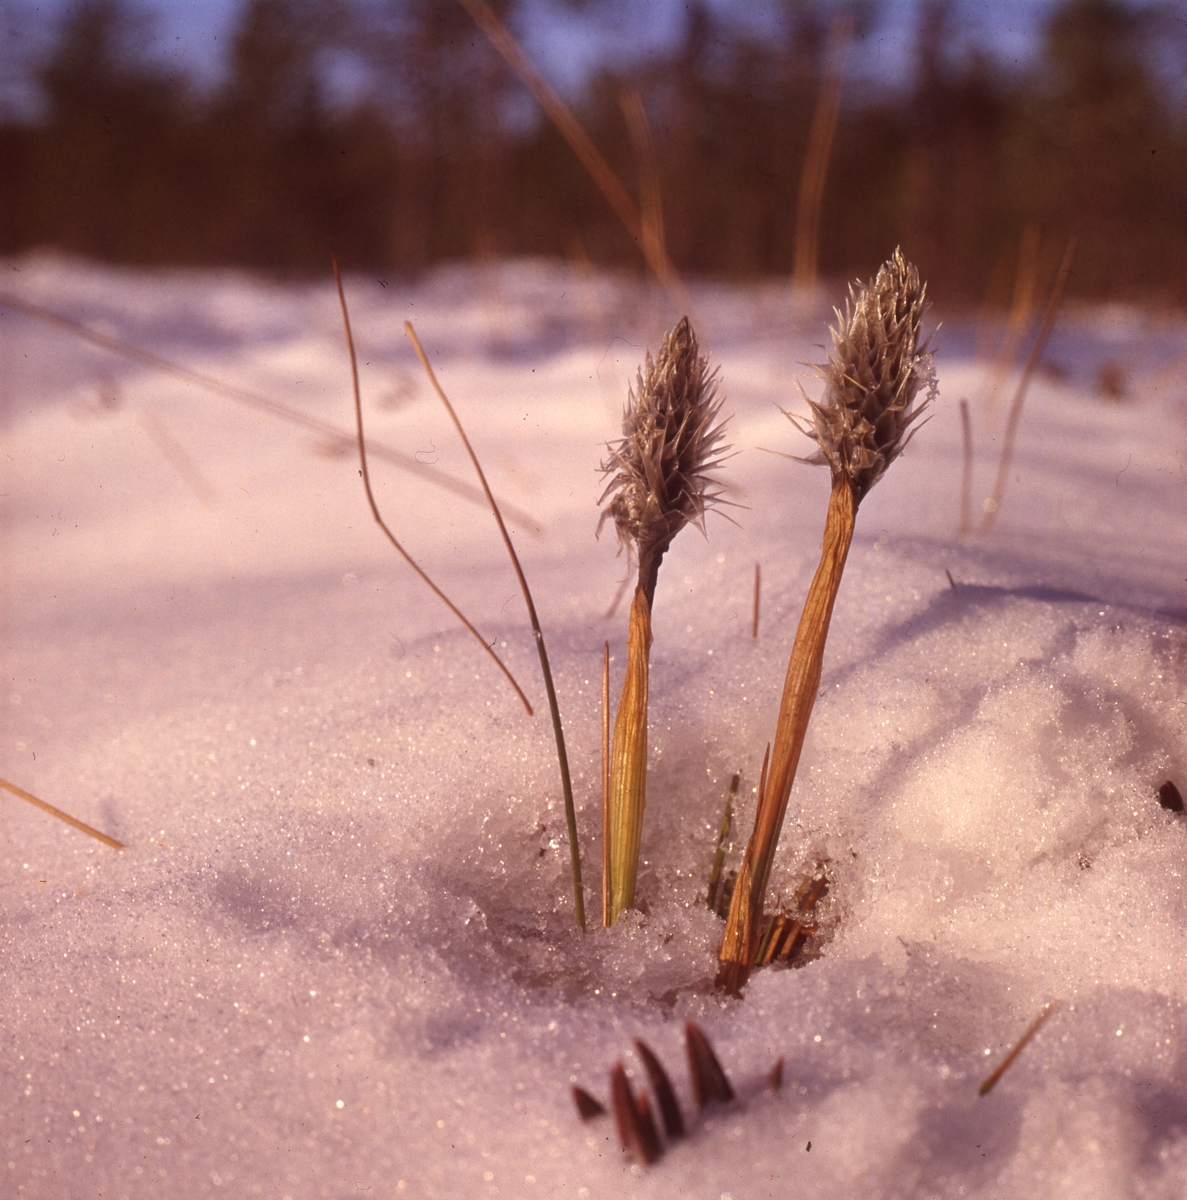 En torkad växt sticker upp ur snön.